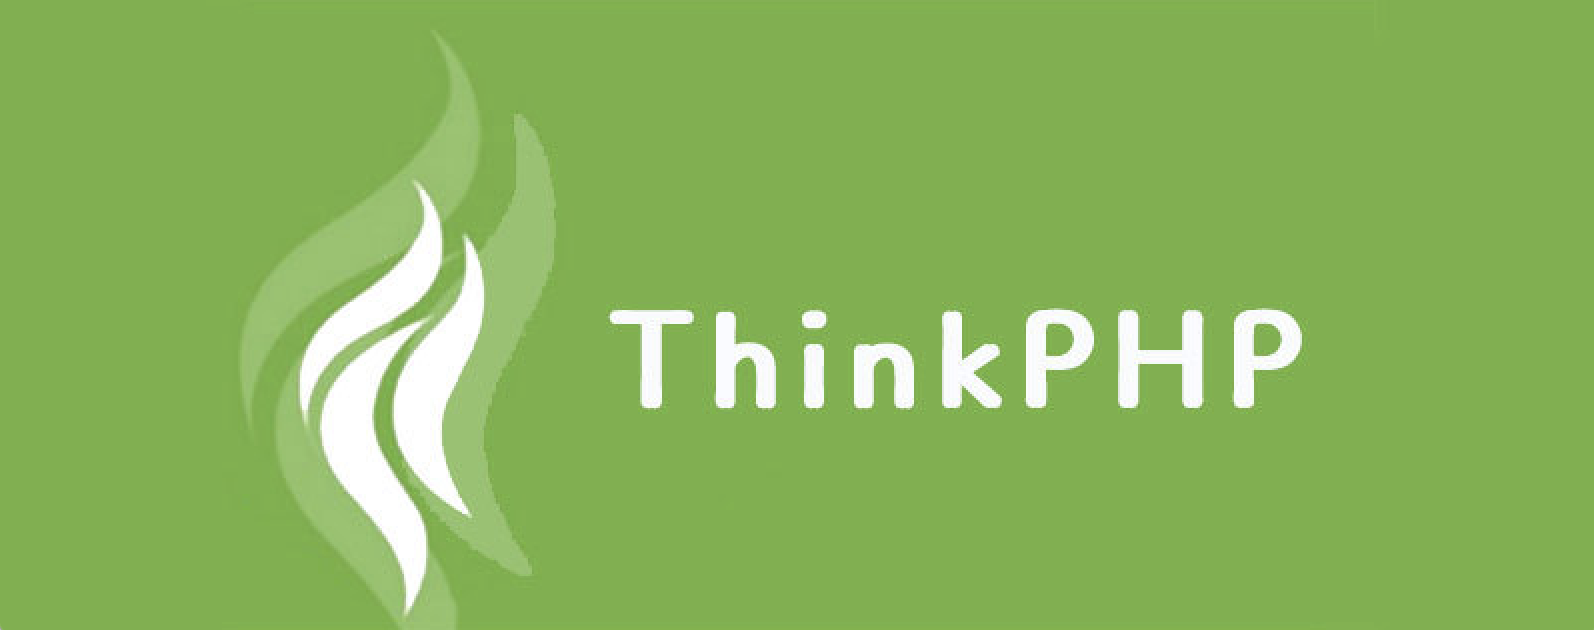 关于 ThinkPHP 远程命令执行漏洞的安全告知